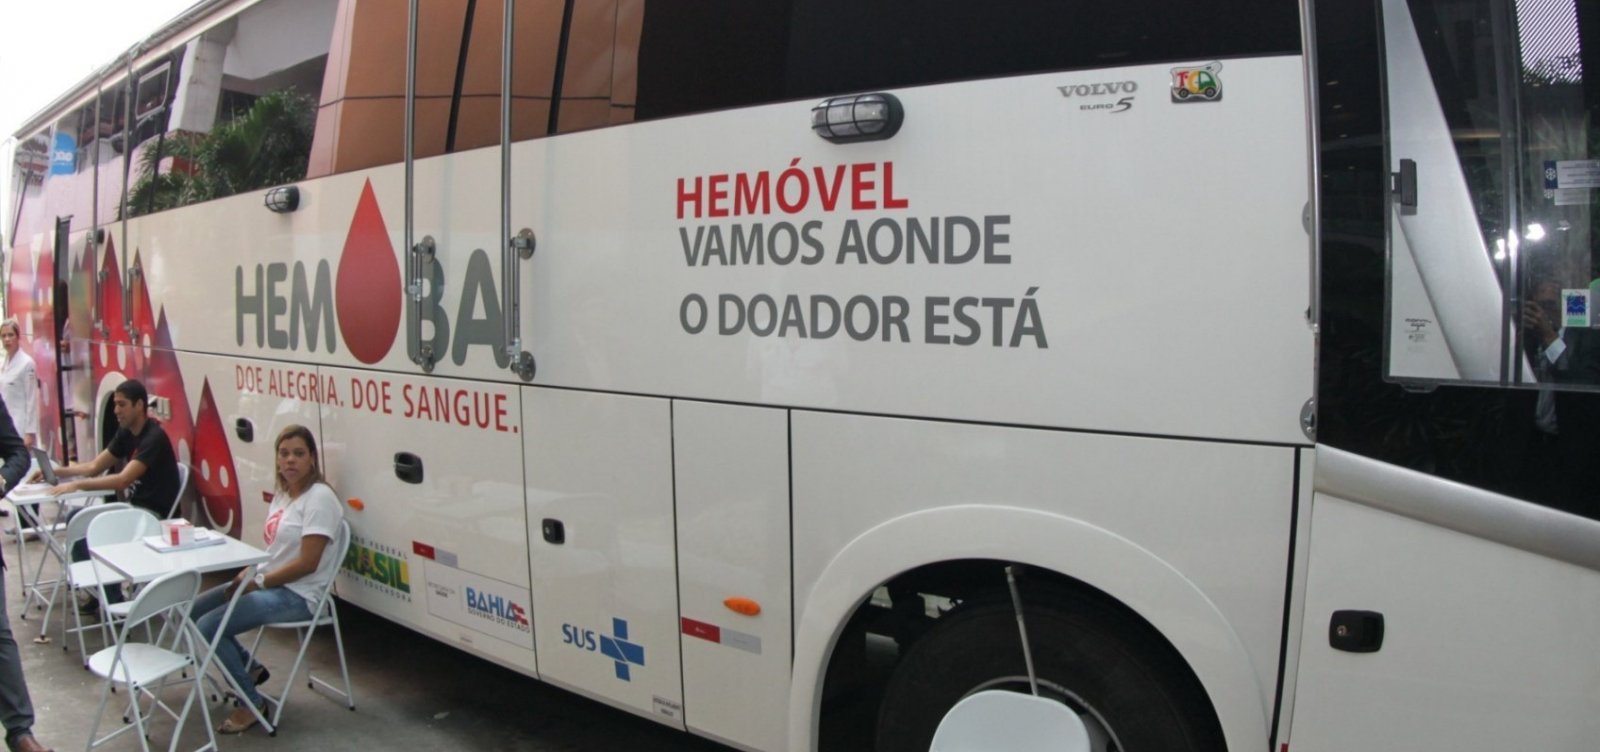 Hemóveis realizam coleta de sangue em Salvador e Feira até sexta; veja locais